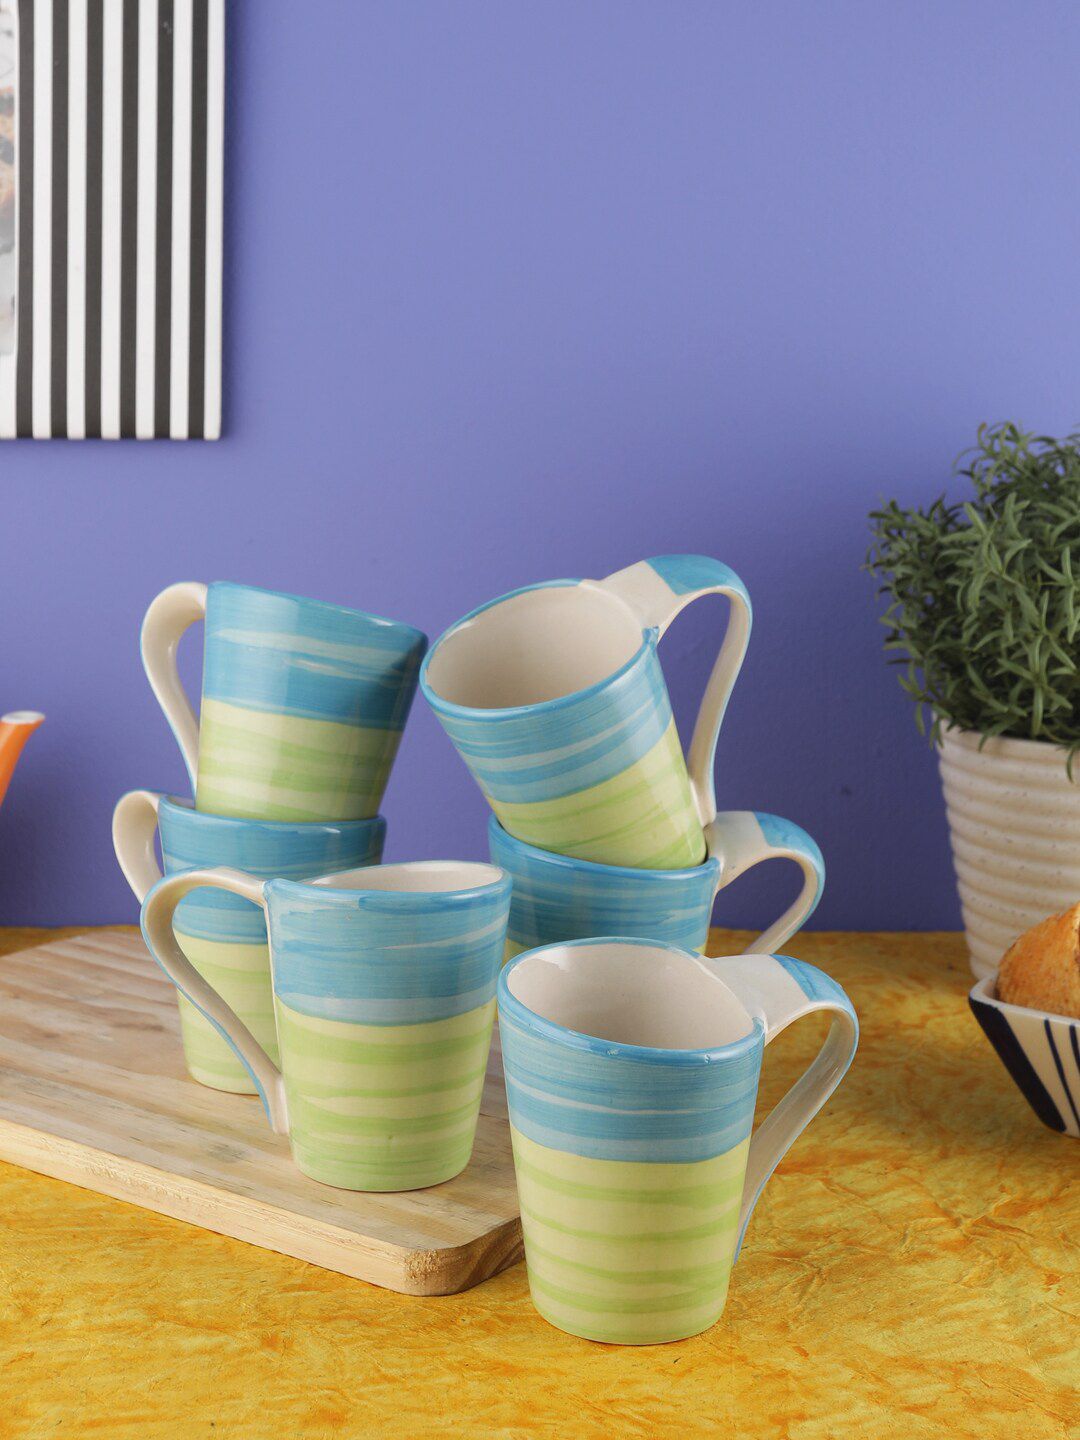 VarEesha Green & Blue 6-Pieces Solid Ceramic Mugs Set Price in India